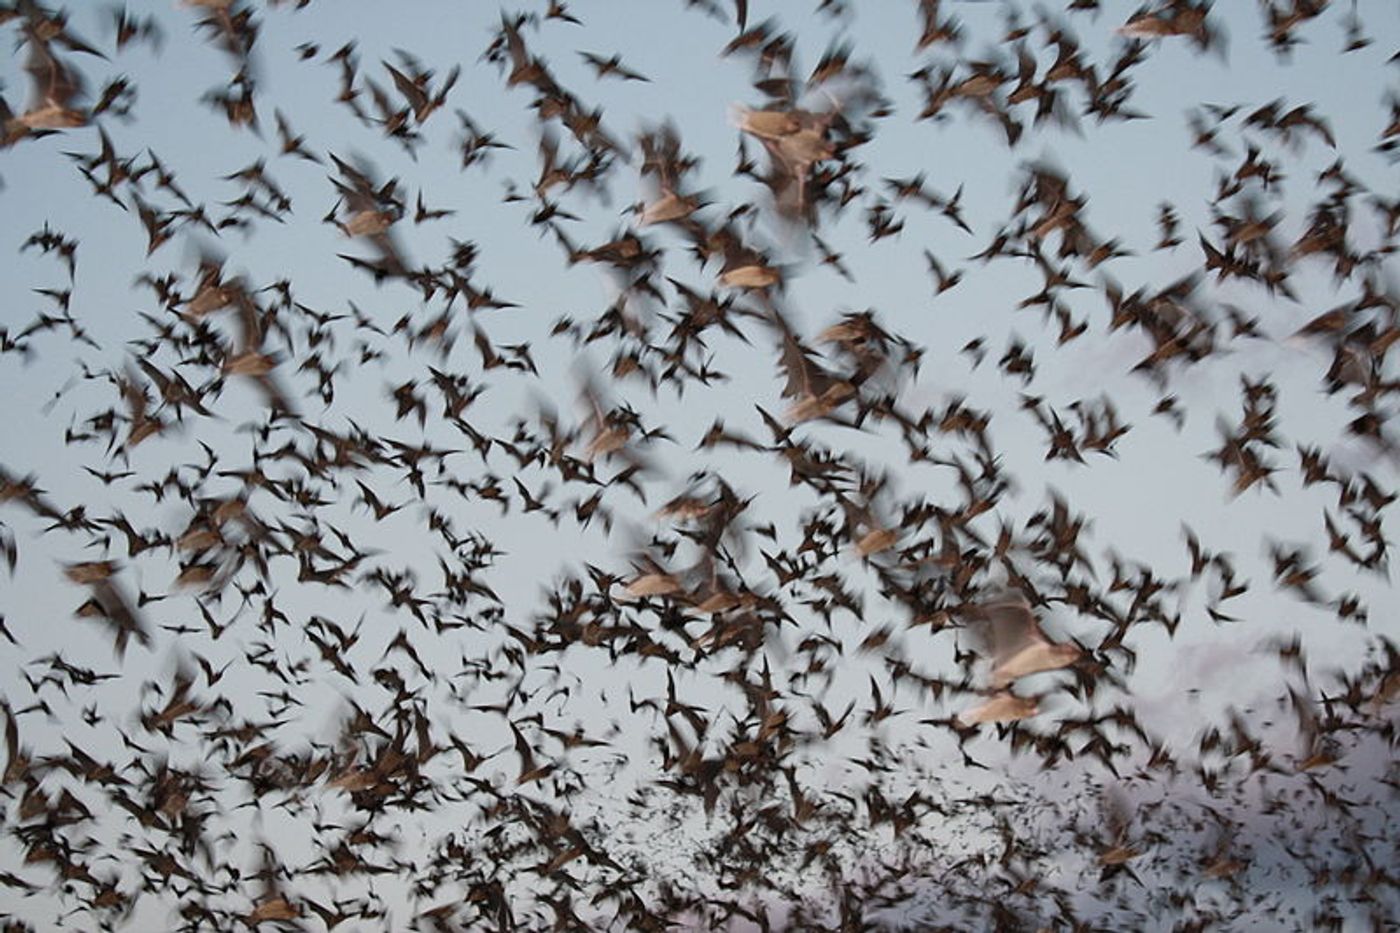 Bats exiting a cave, credit: public domain